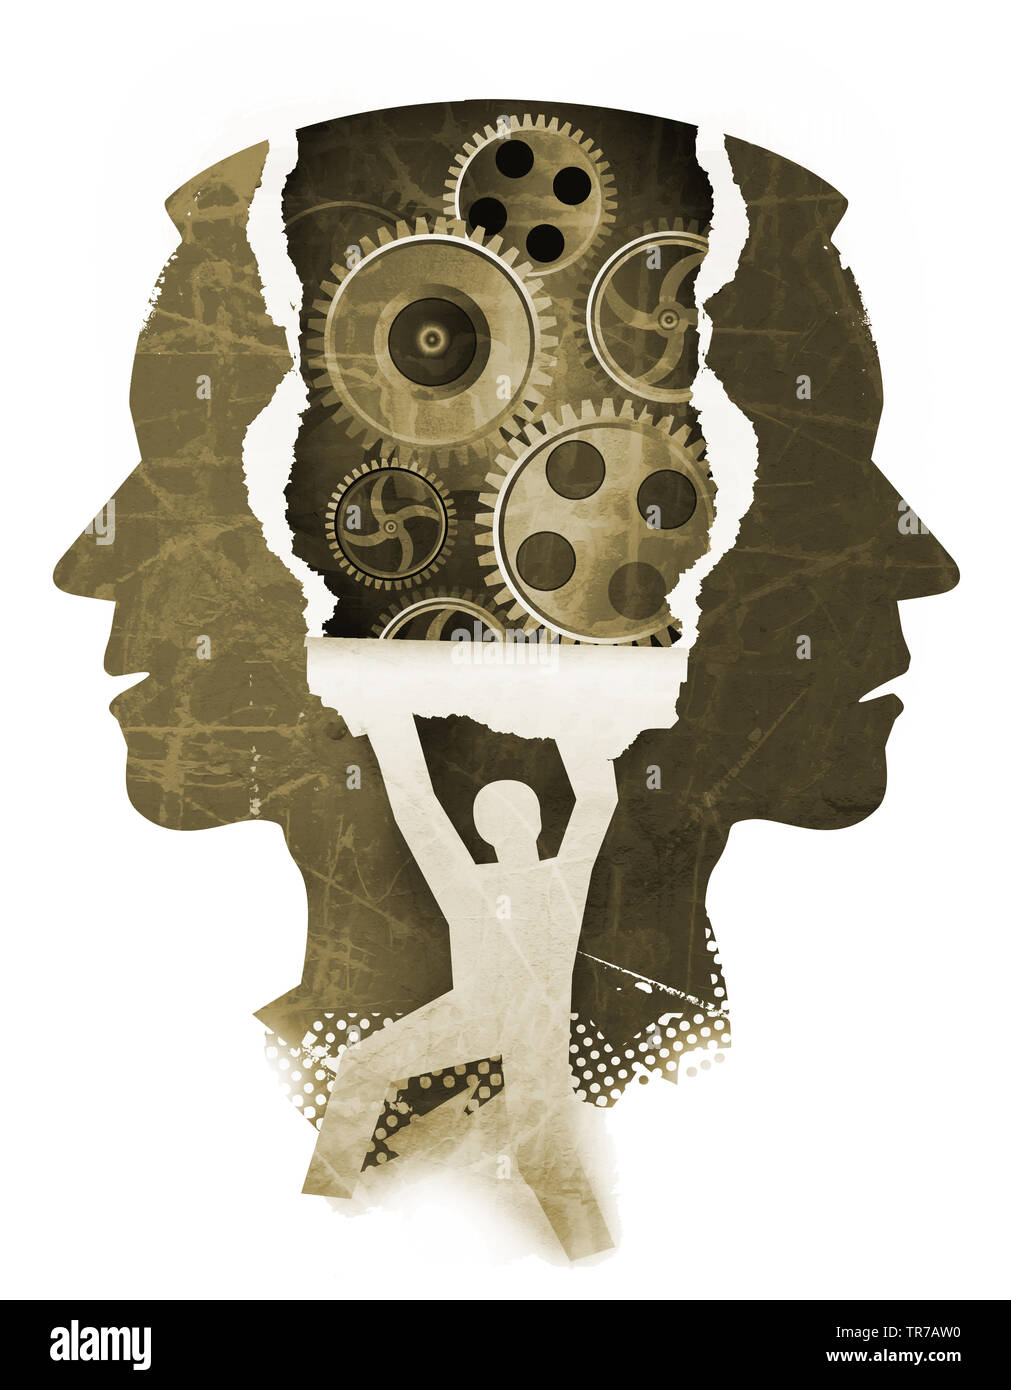 Chizophrenia psychiatrischen Untersuchung Konzept. Stilisierten männlichen Kopf Silhouetten und männlichen Silhouette ripping Papier Hintergrund mit Zahnrad. Stockfoto